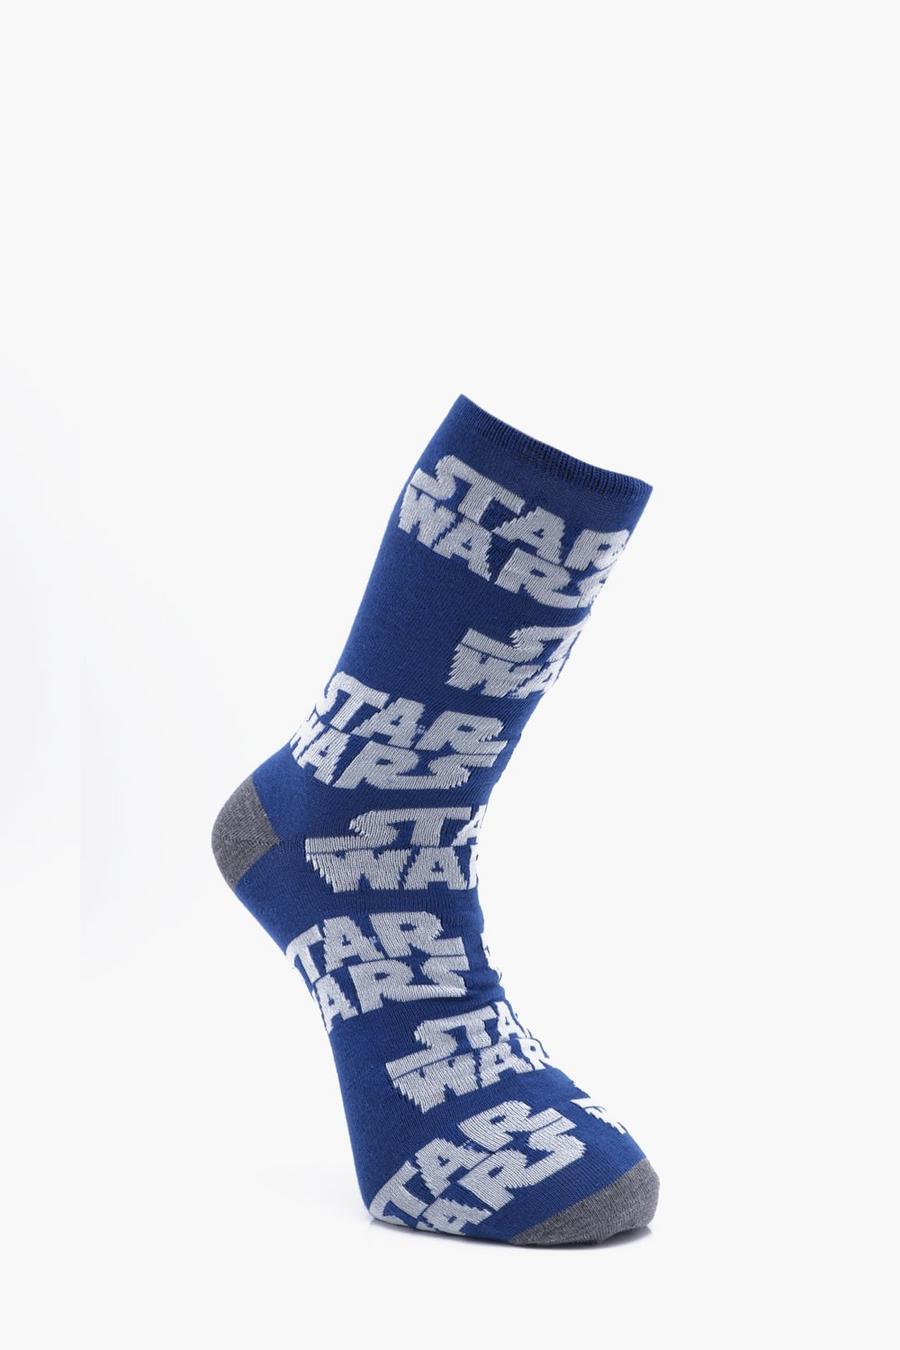 Star Wars Socks image number 1